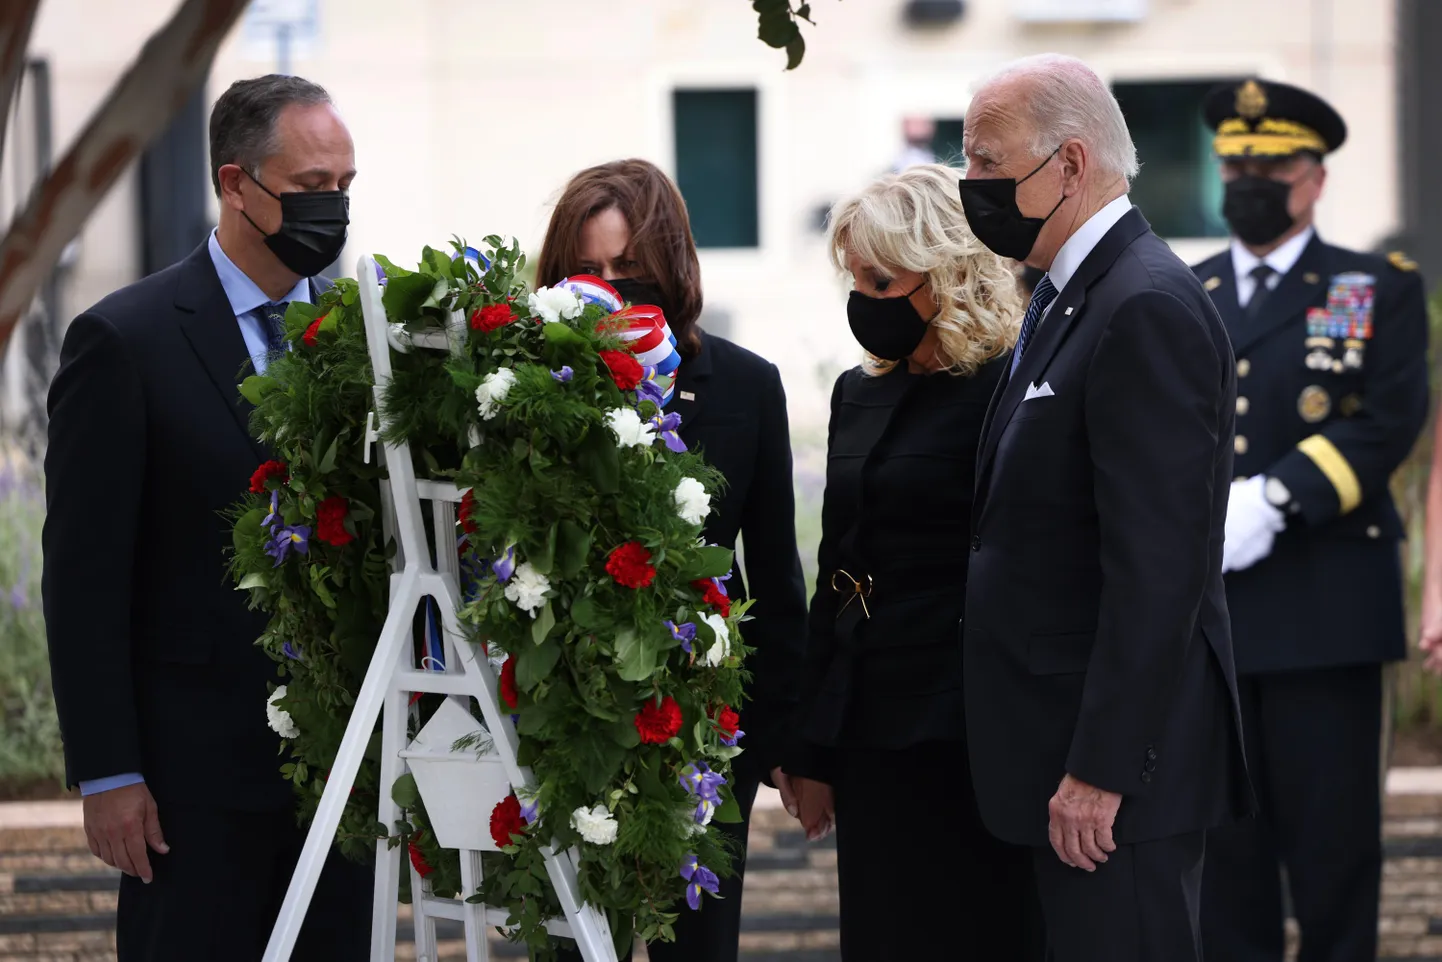 Президент Джо Байден, первая леди Джилл Байден, вице-президент Камала Харрис и второй джентльмен Дуг Эмхофф на церемонии возложения венков к мемориалу.